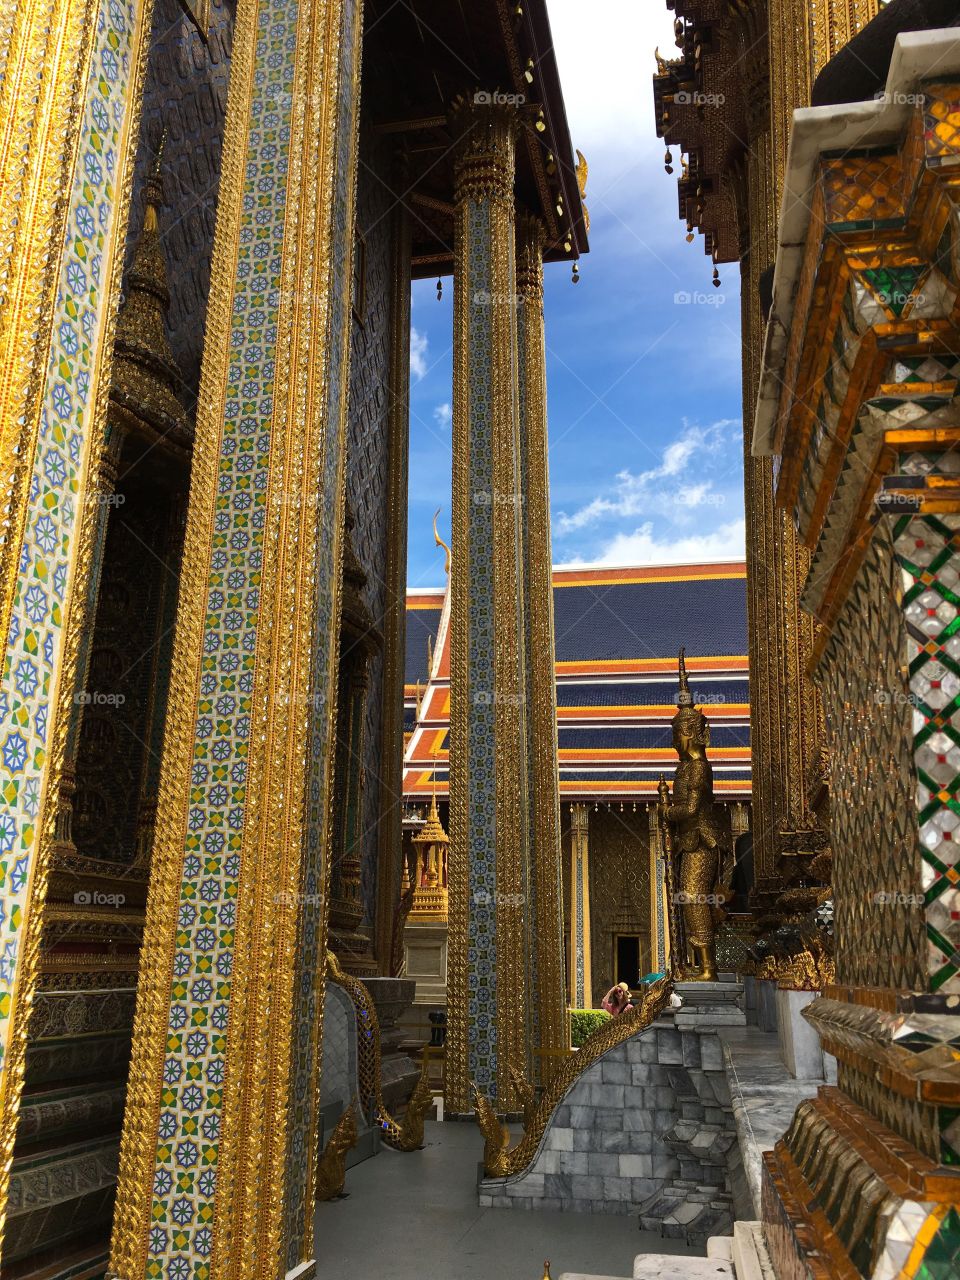 Grand Palace / Bangkok Thailand 29